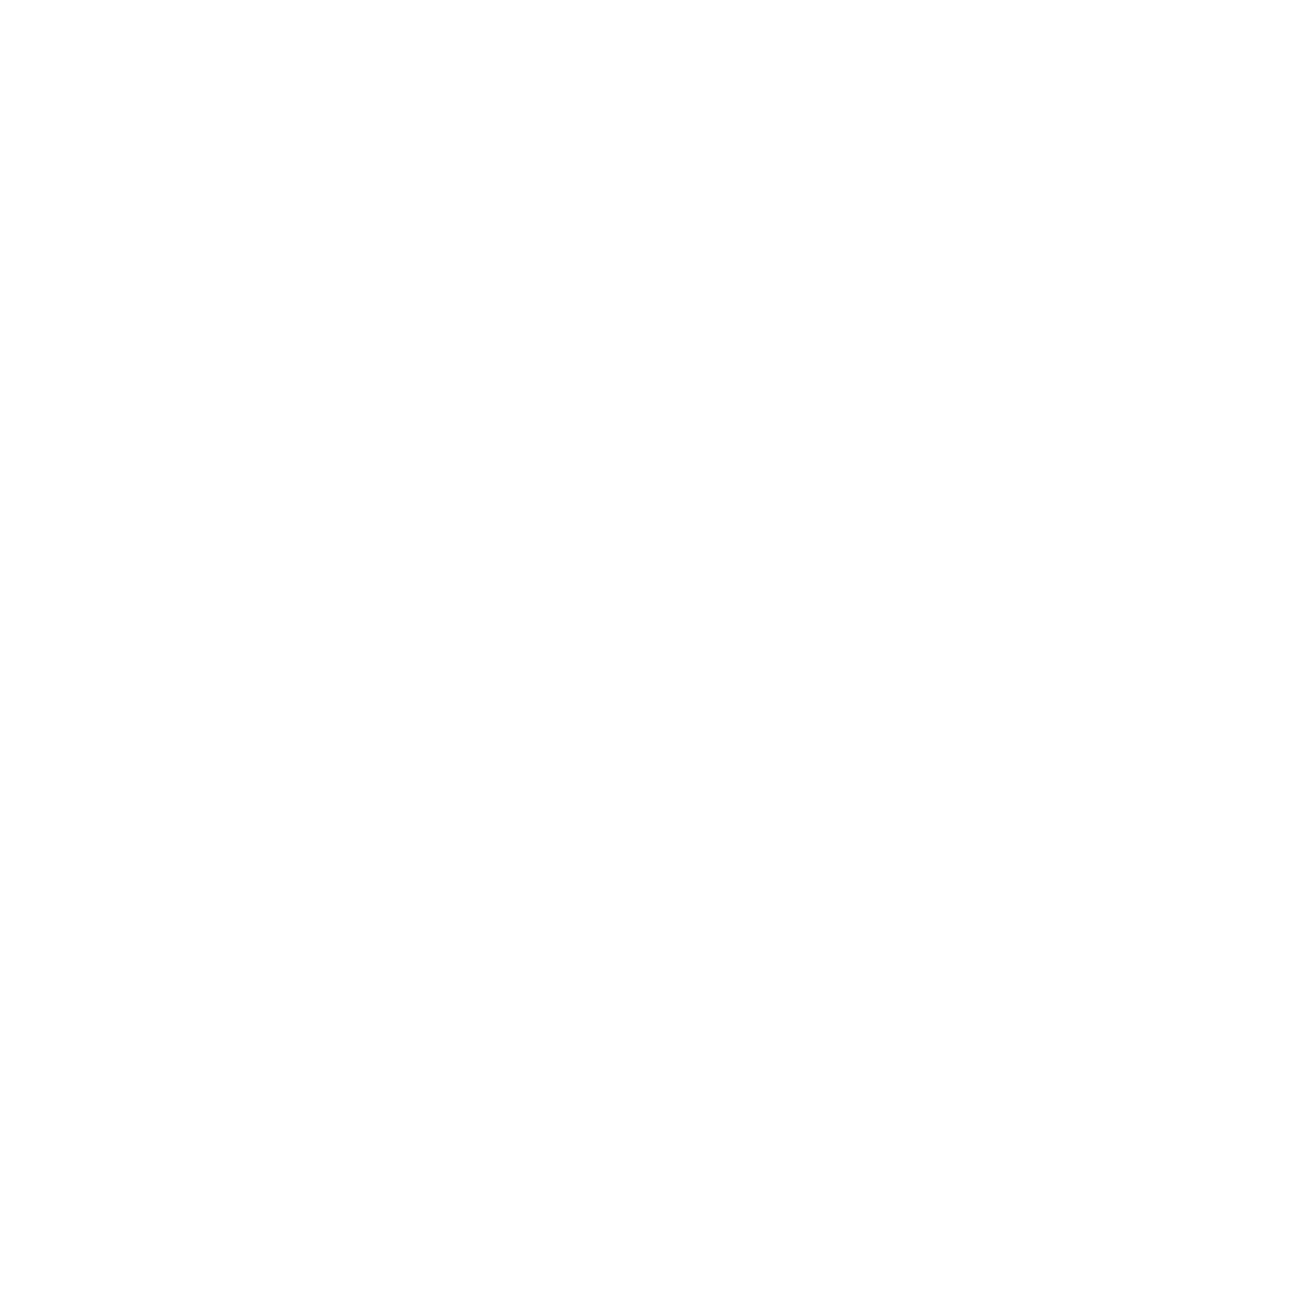 Altimetrix